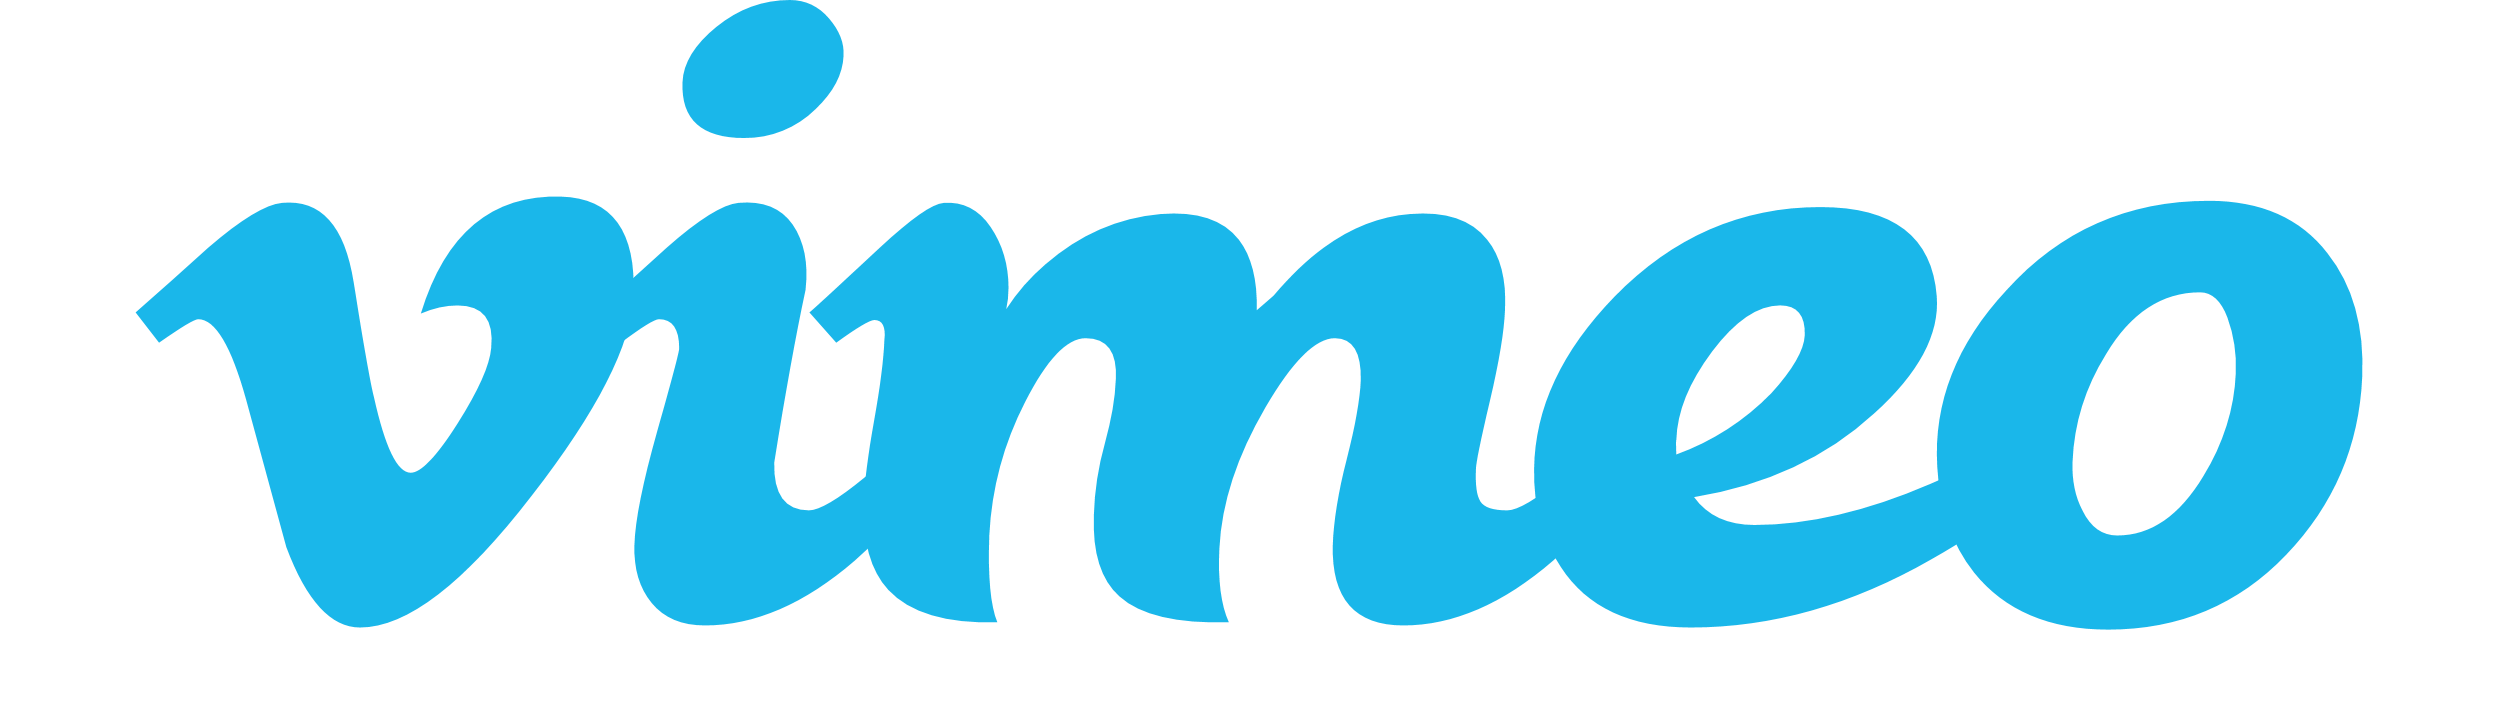 Vimeo logo png1